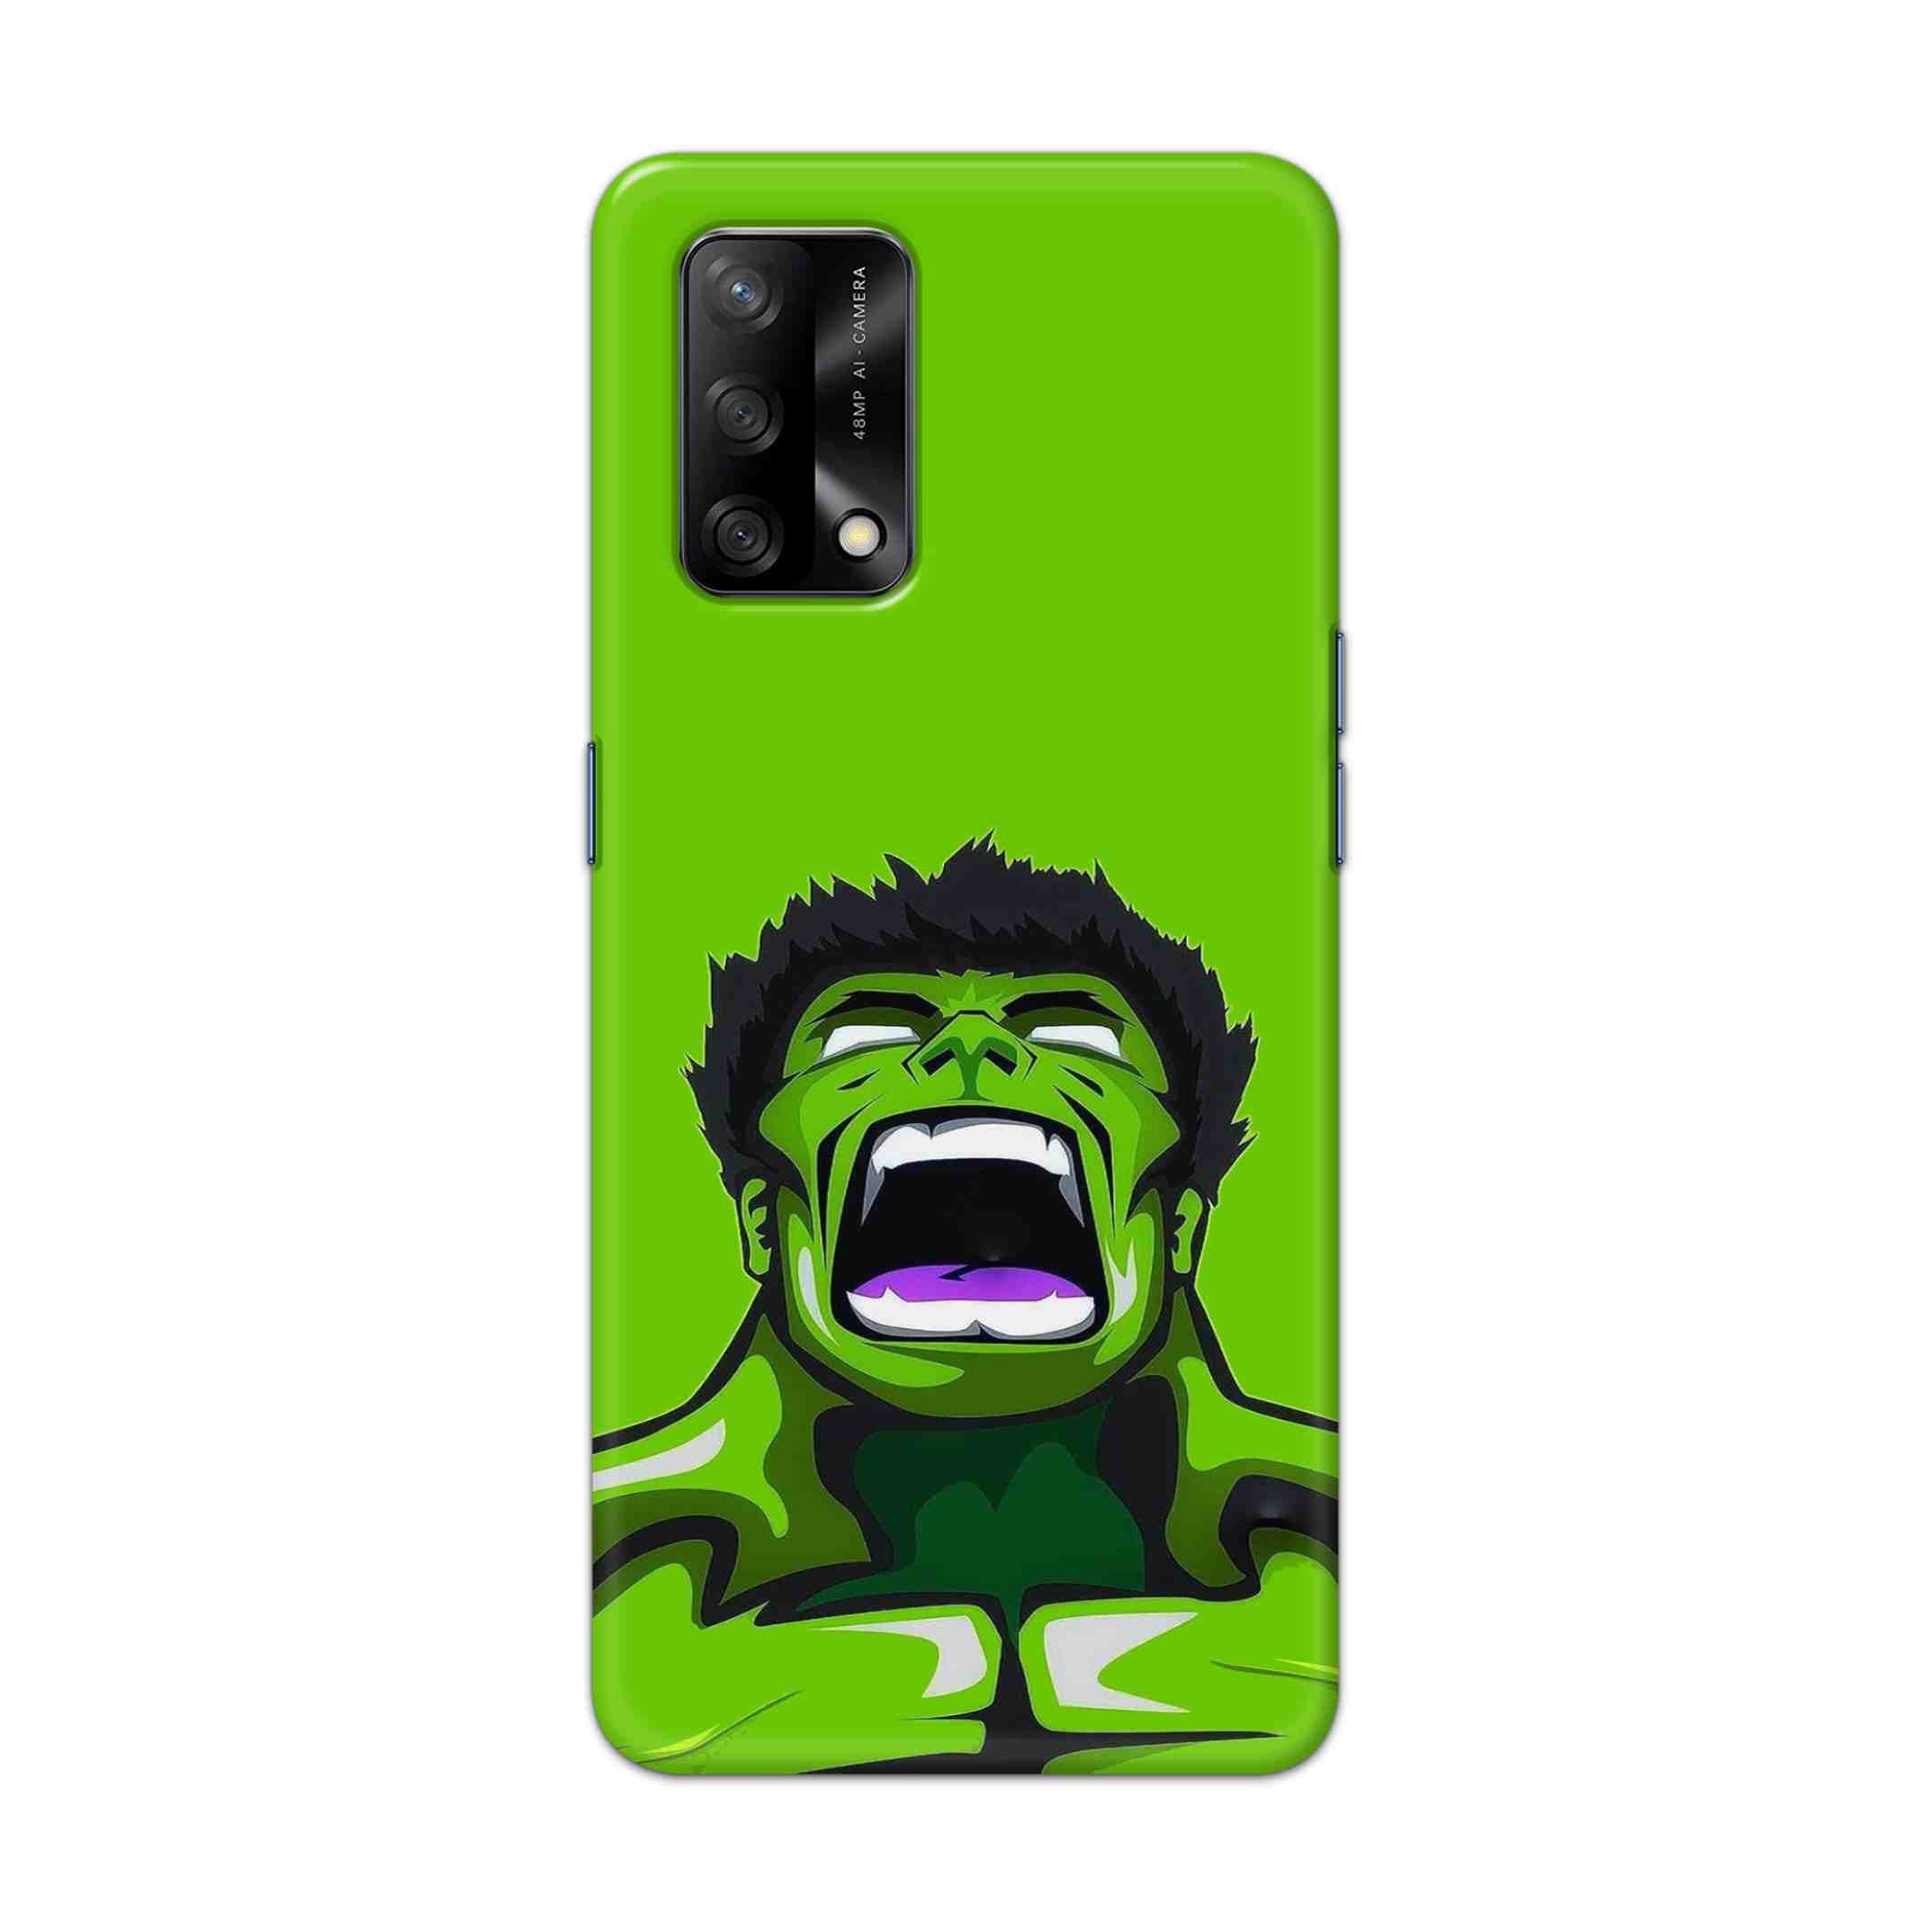 Buy Green Hulk Hard Back Mobile Phone Case Cover For Oppo F19 Online